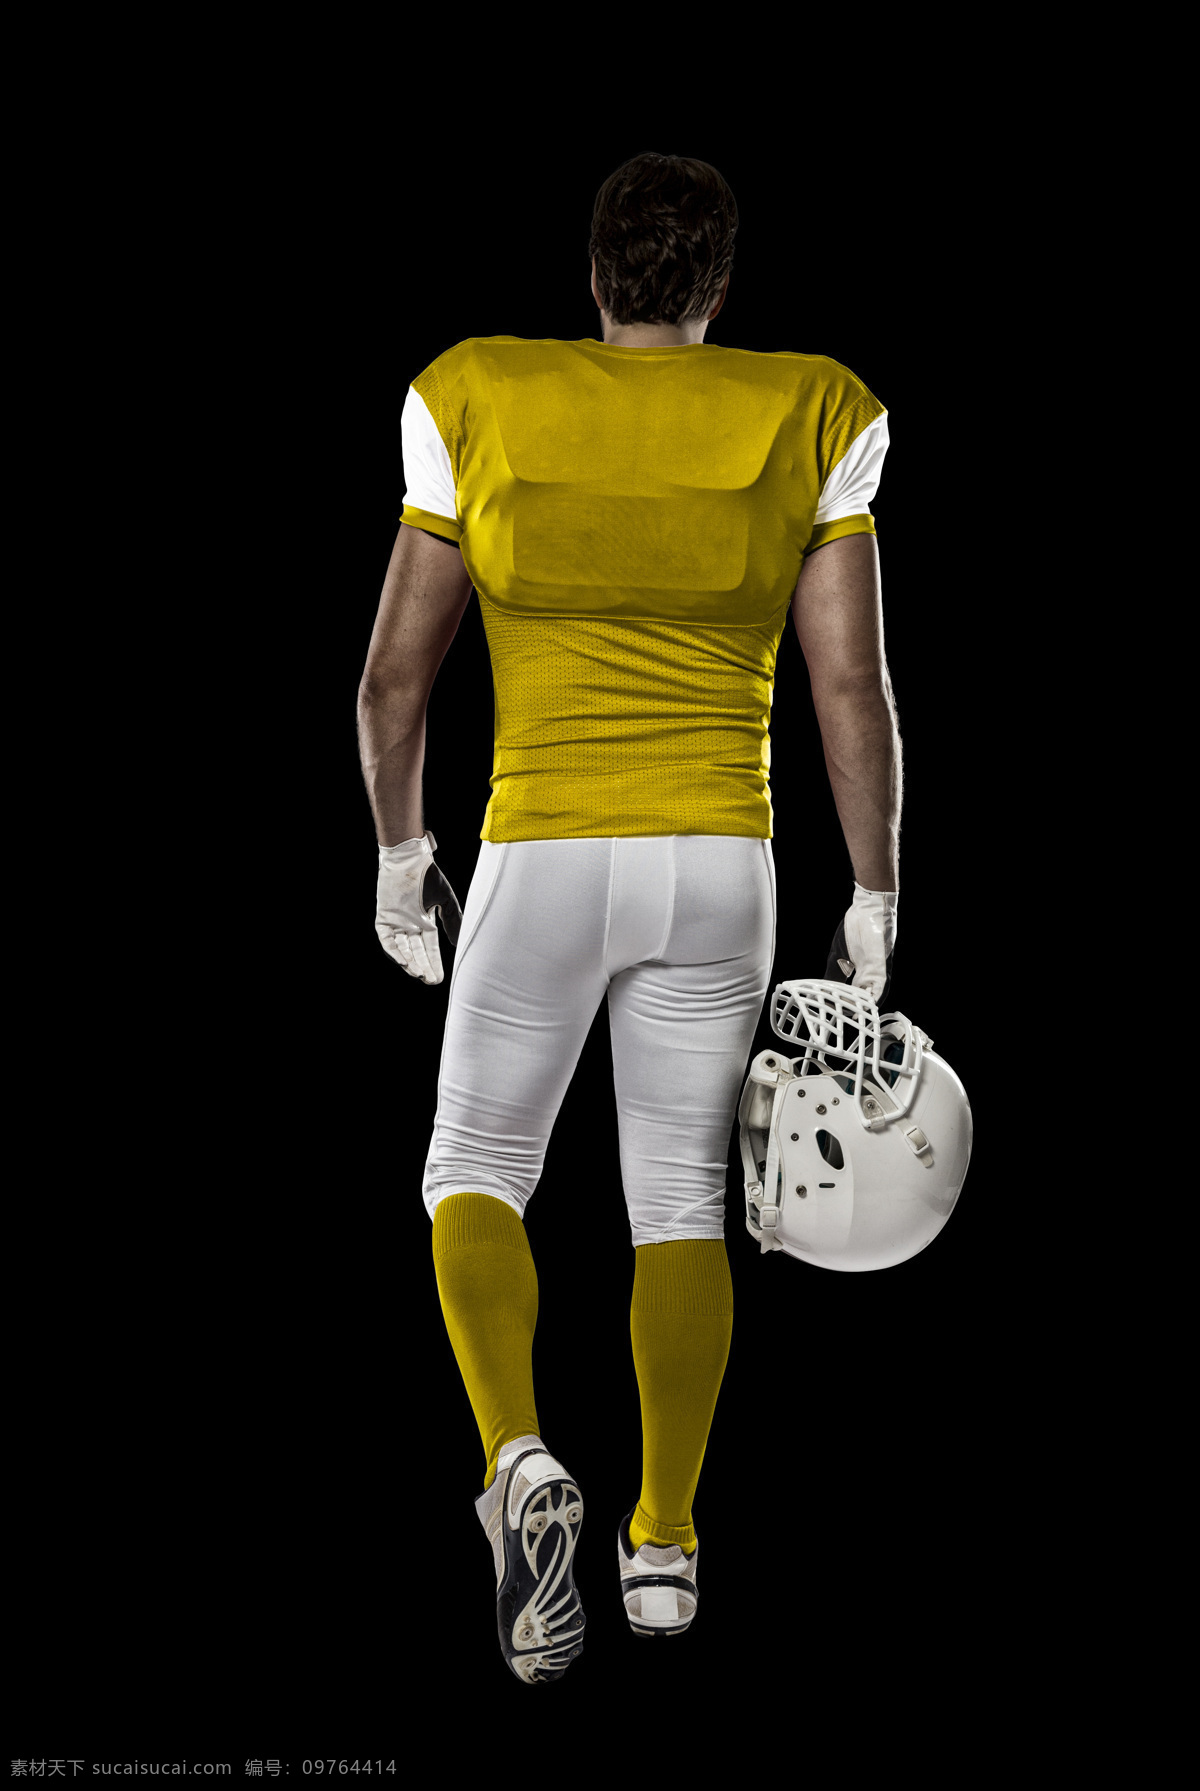 提 头盔 橄榄球 运动员 美式足球 橄榄球运动员 体育运动 体育项目 生活百科